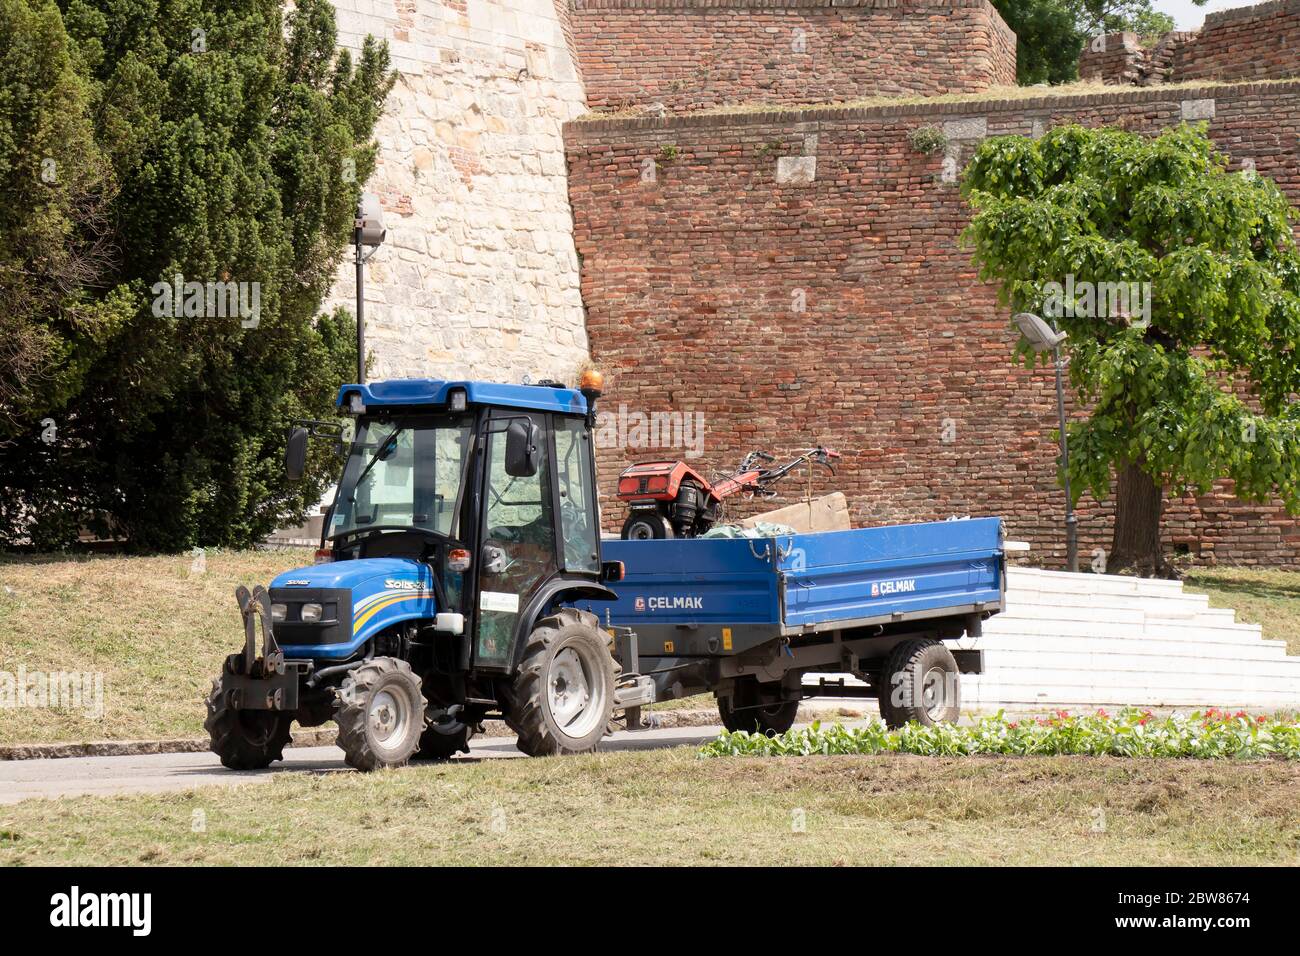 Belgrade, Serbie - 21 mai 2020 : tracteur de service de verdure de la ville avec une tondeuse à gazon dans sa remorque, dans le parc et la forteresse de Kalemegdan Banque D'Images